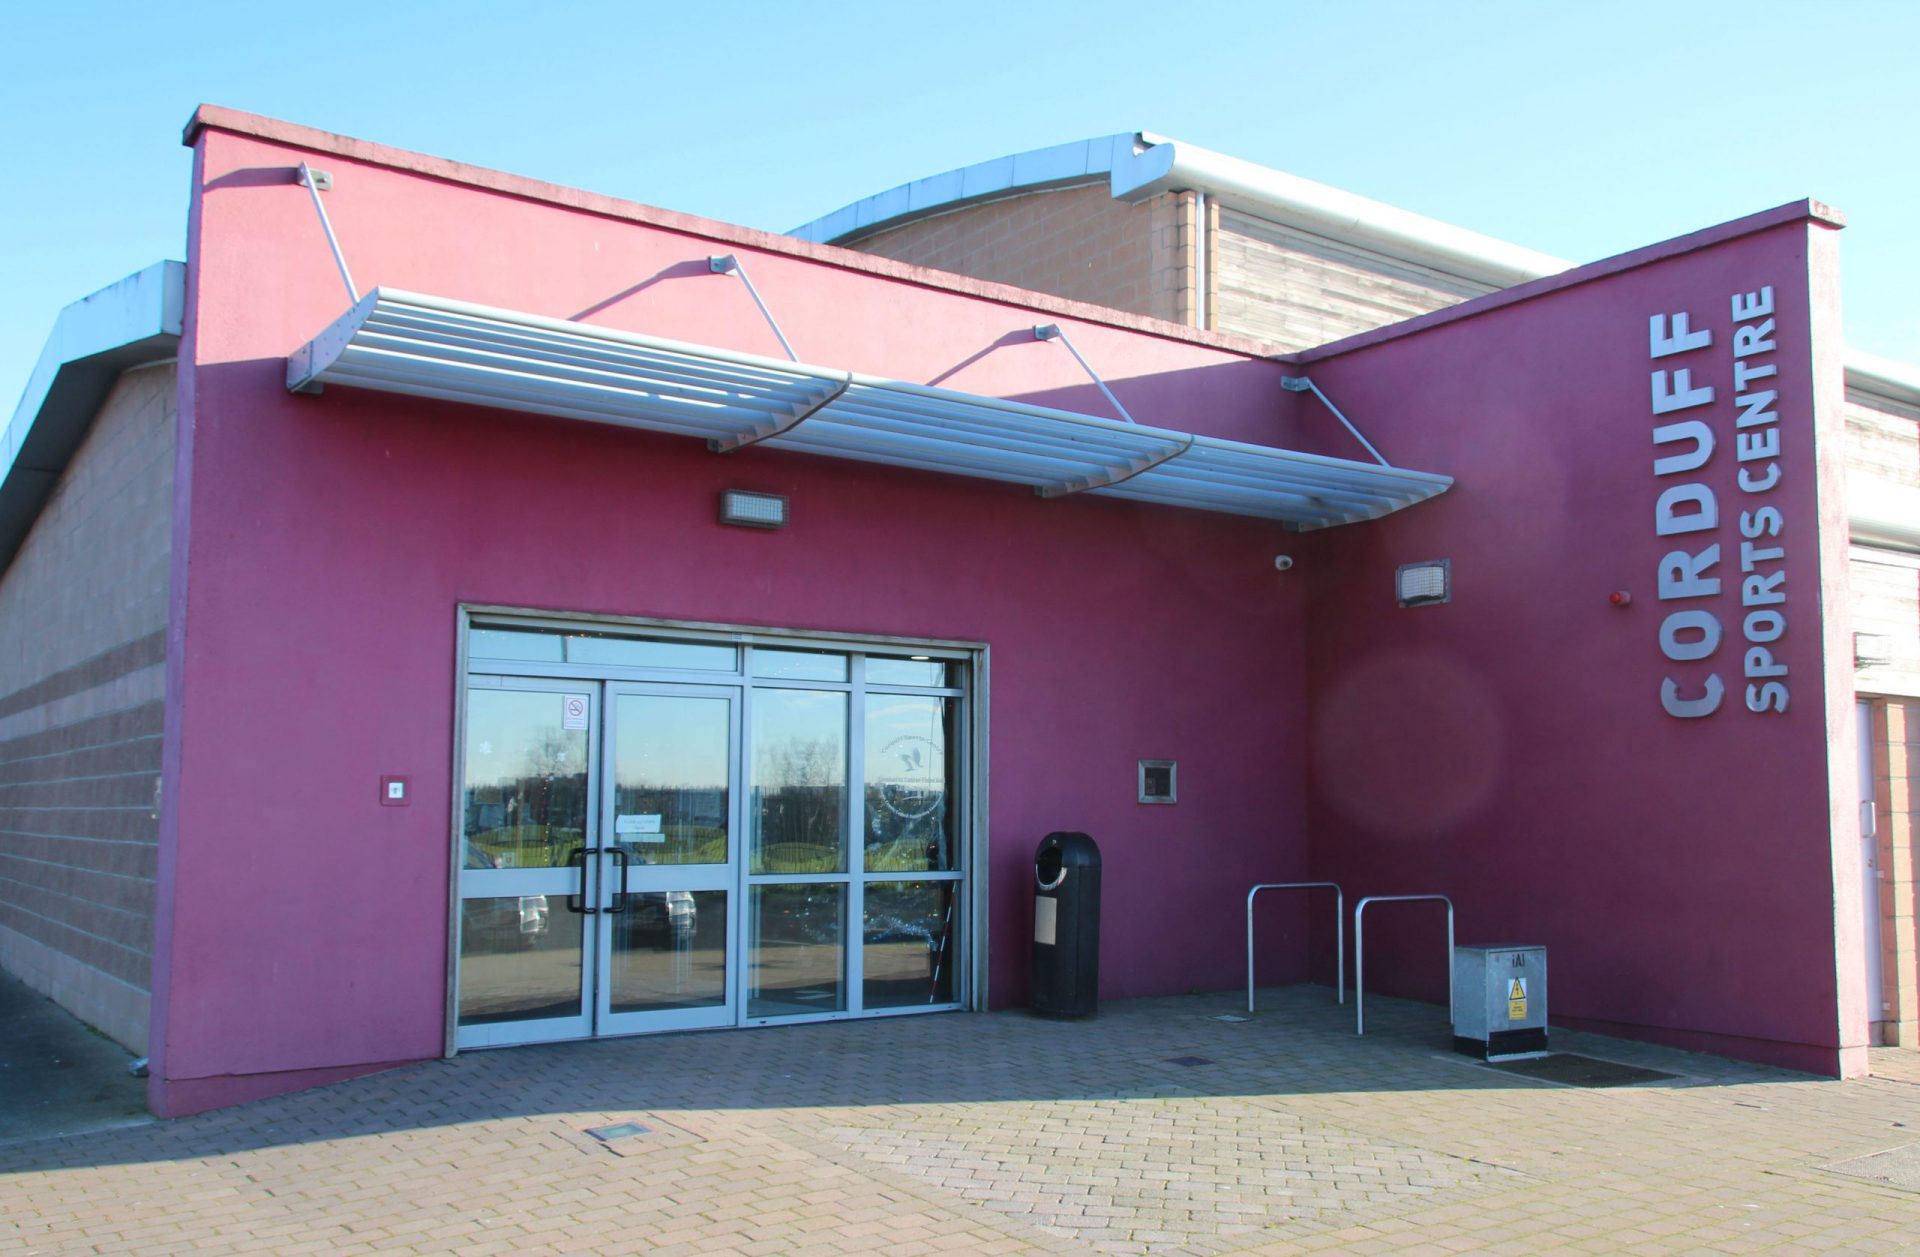 Corduff Sports Centre - Building